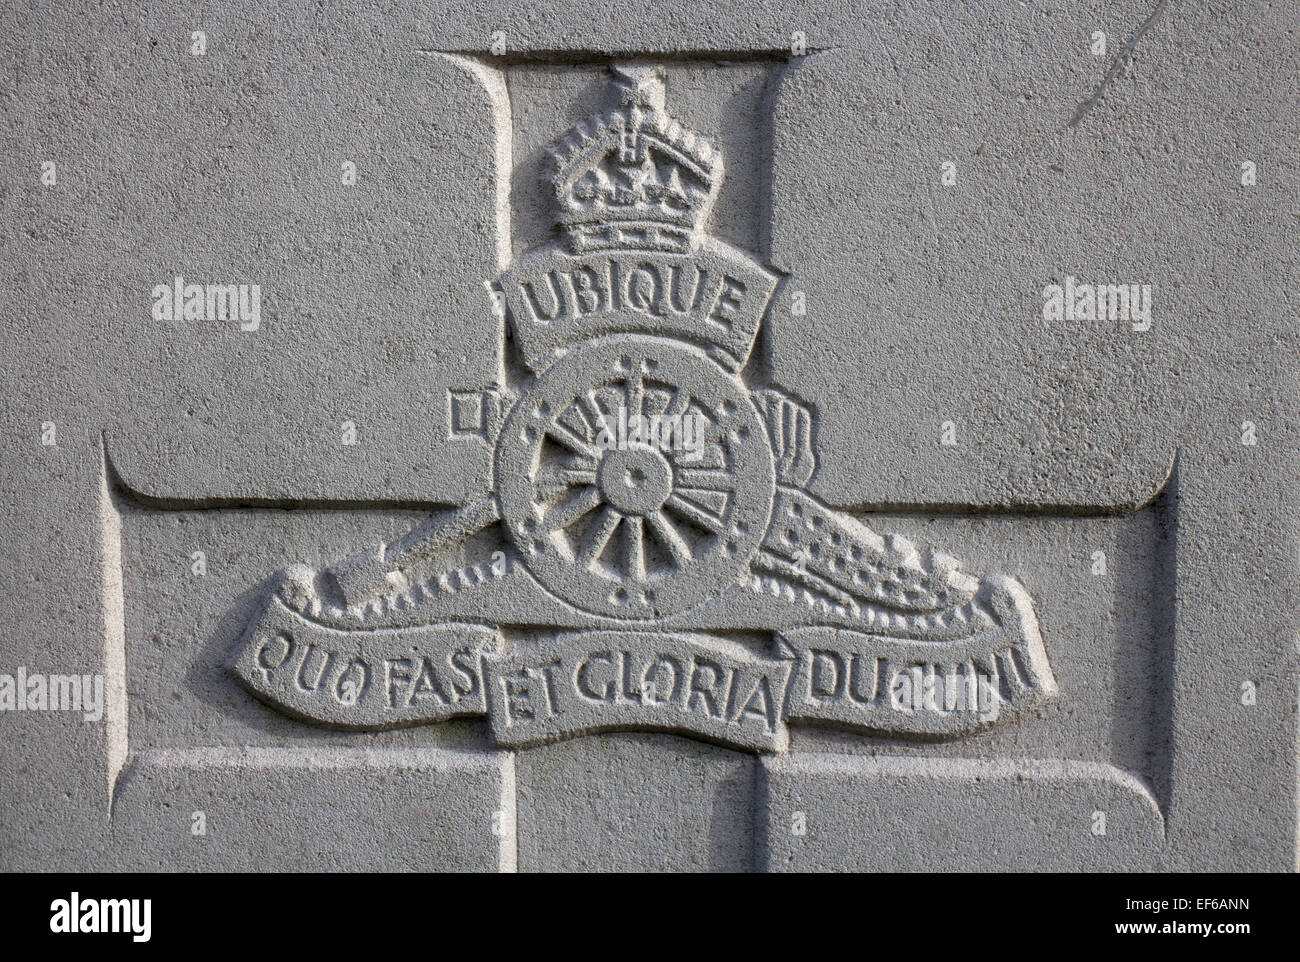 Royal Artillery emblem on a war grave Stock Photo